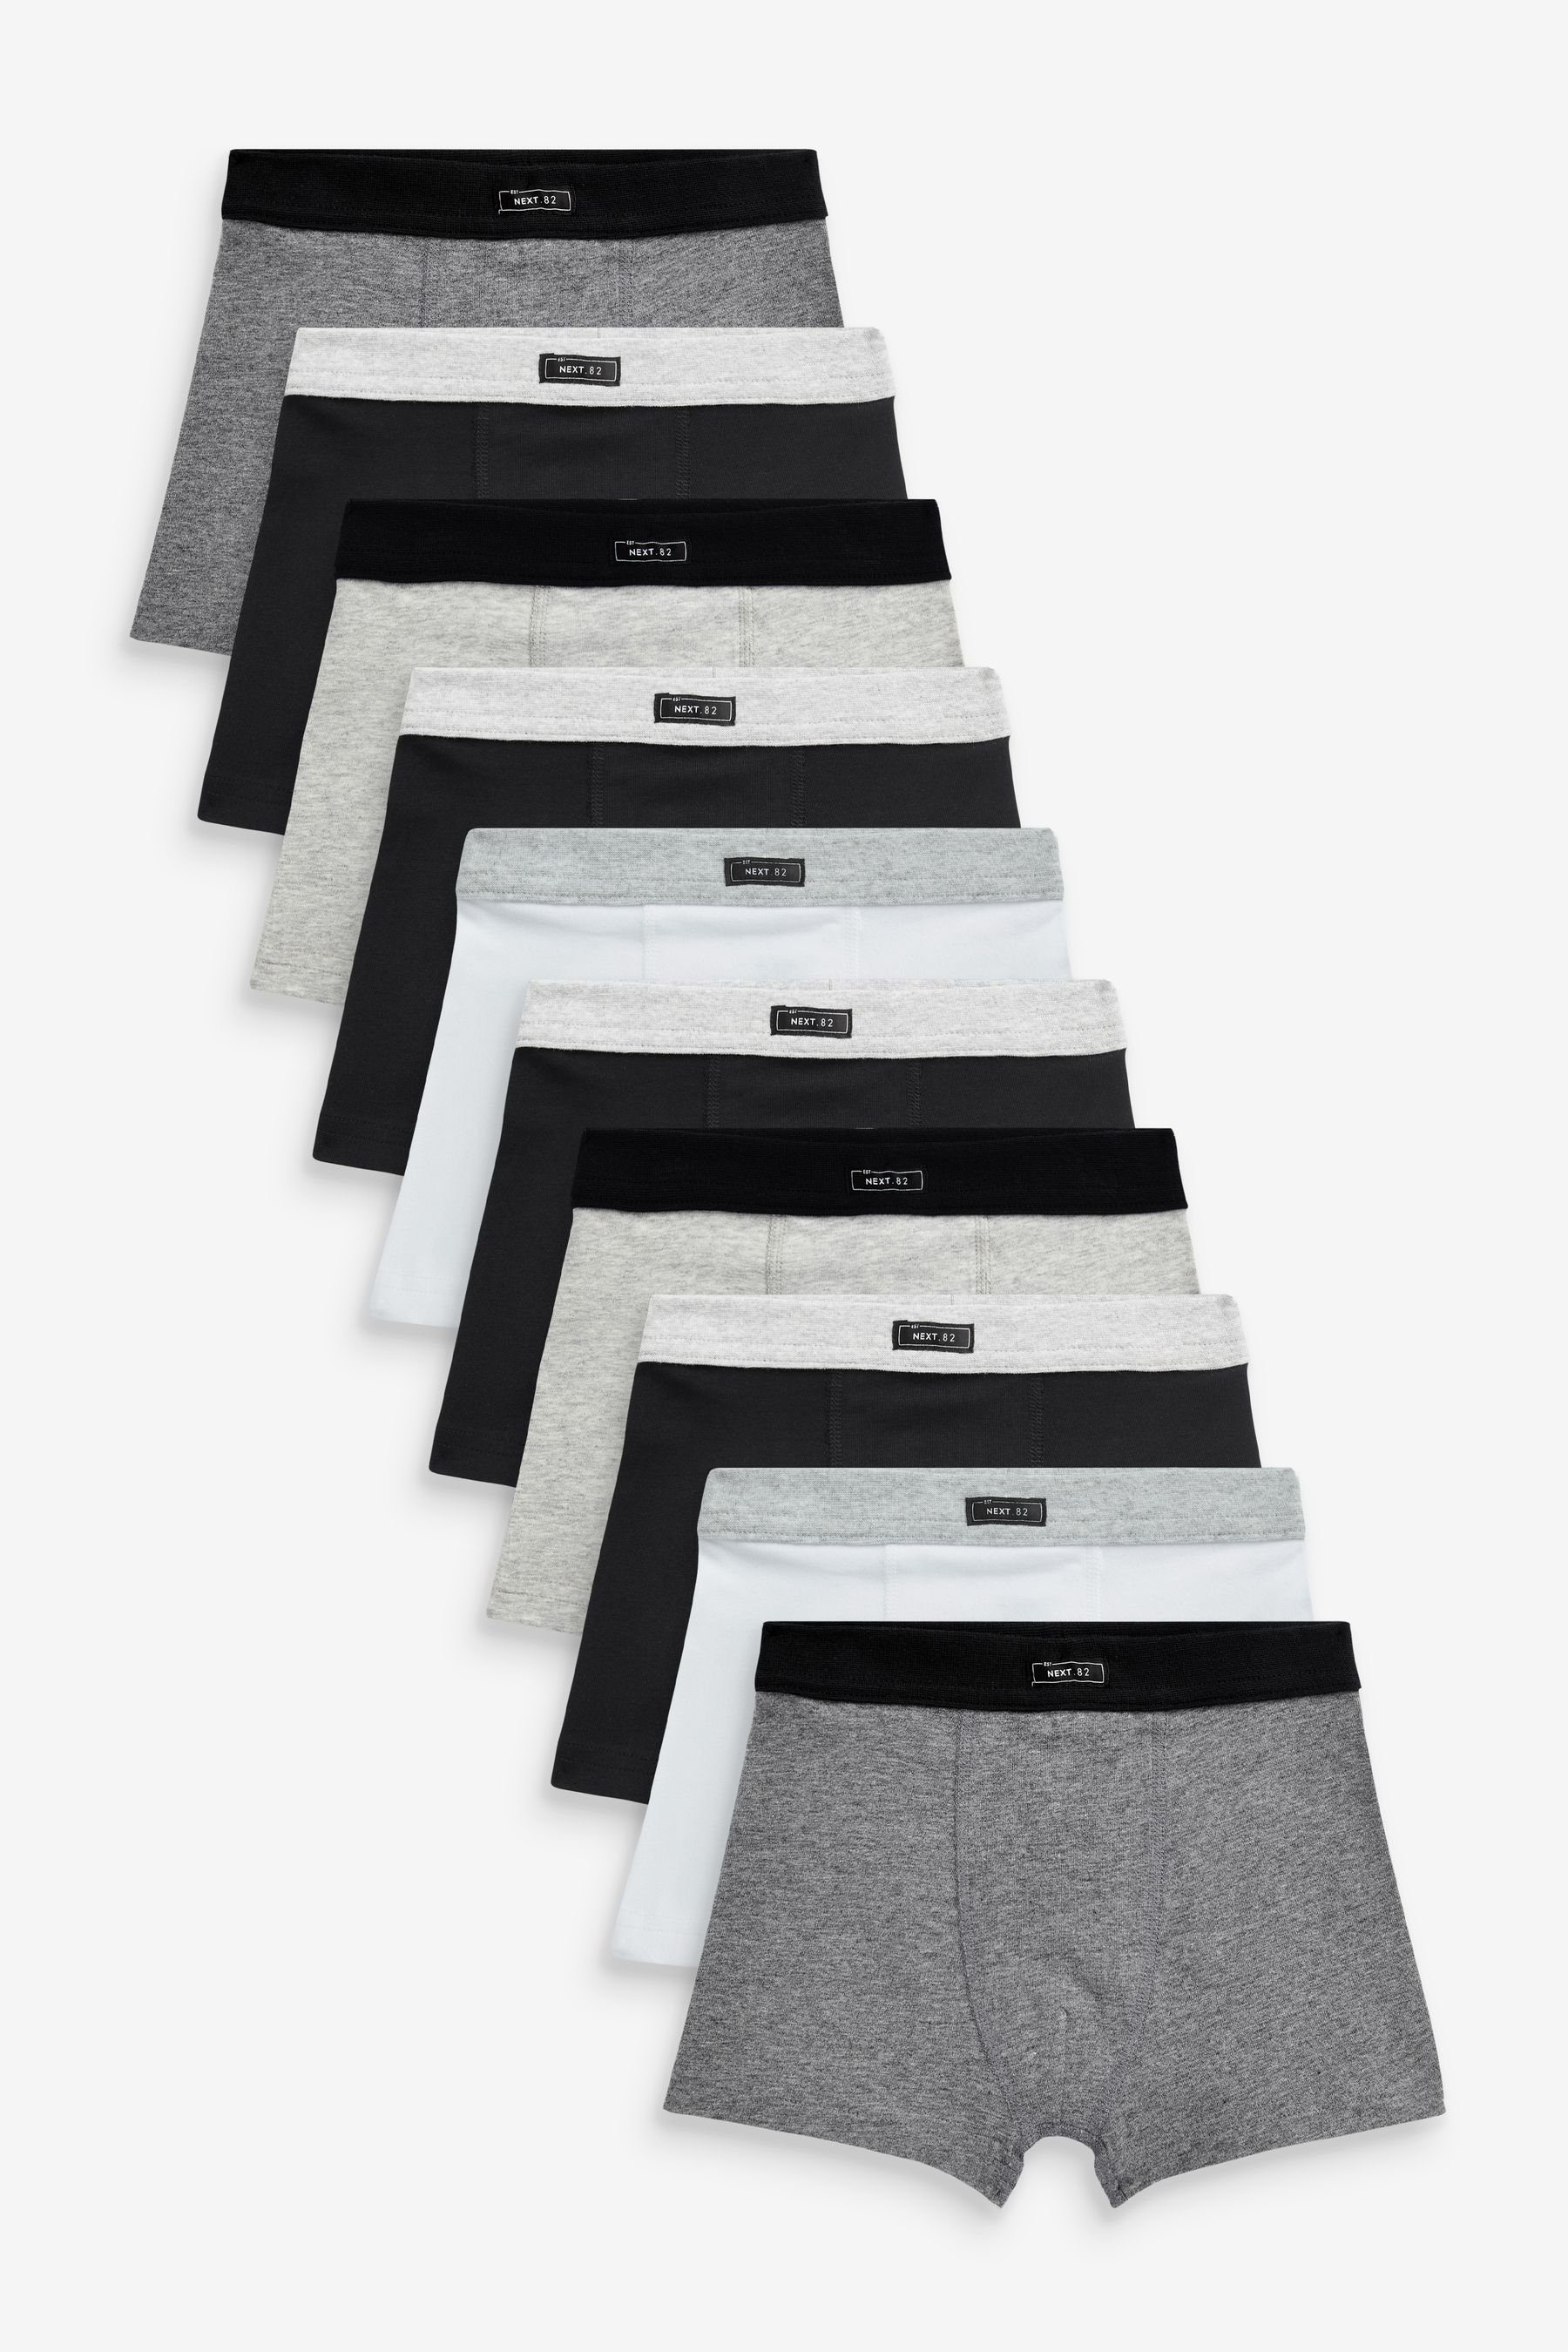 Next Unterhosen, Black/Grey/White (10-St) Trunk 10er-Pack